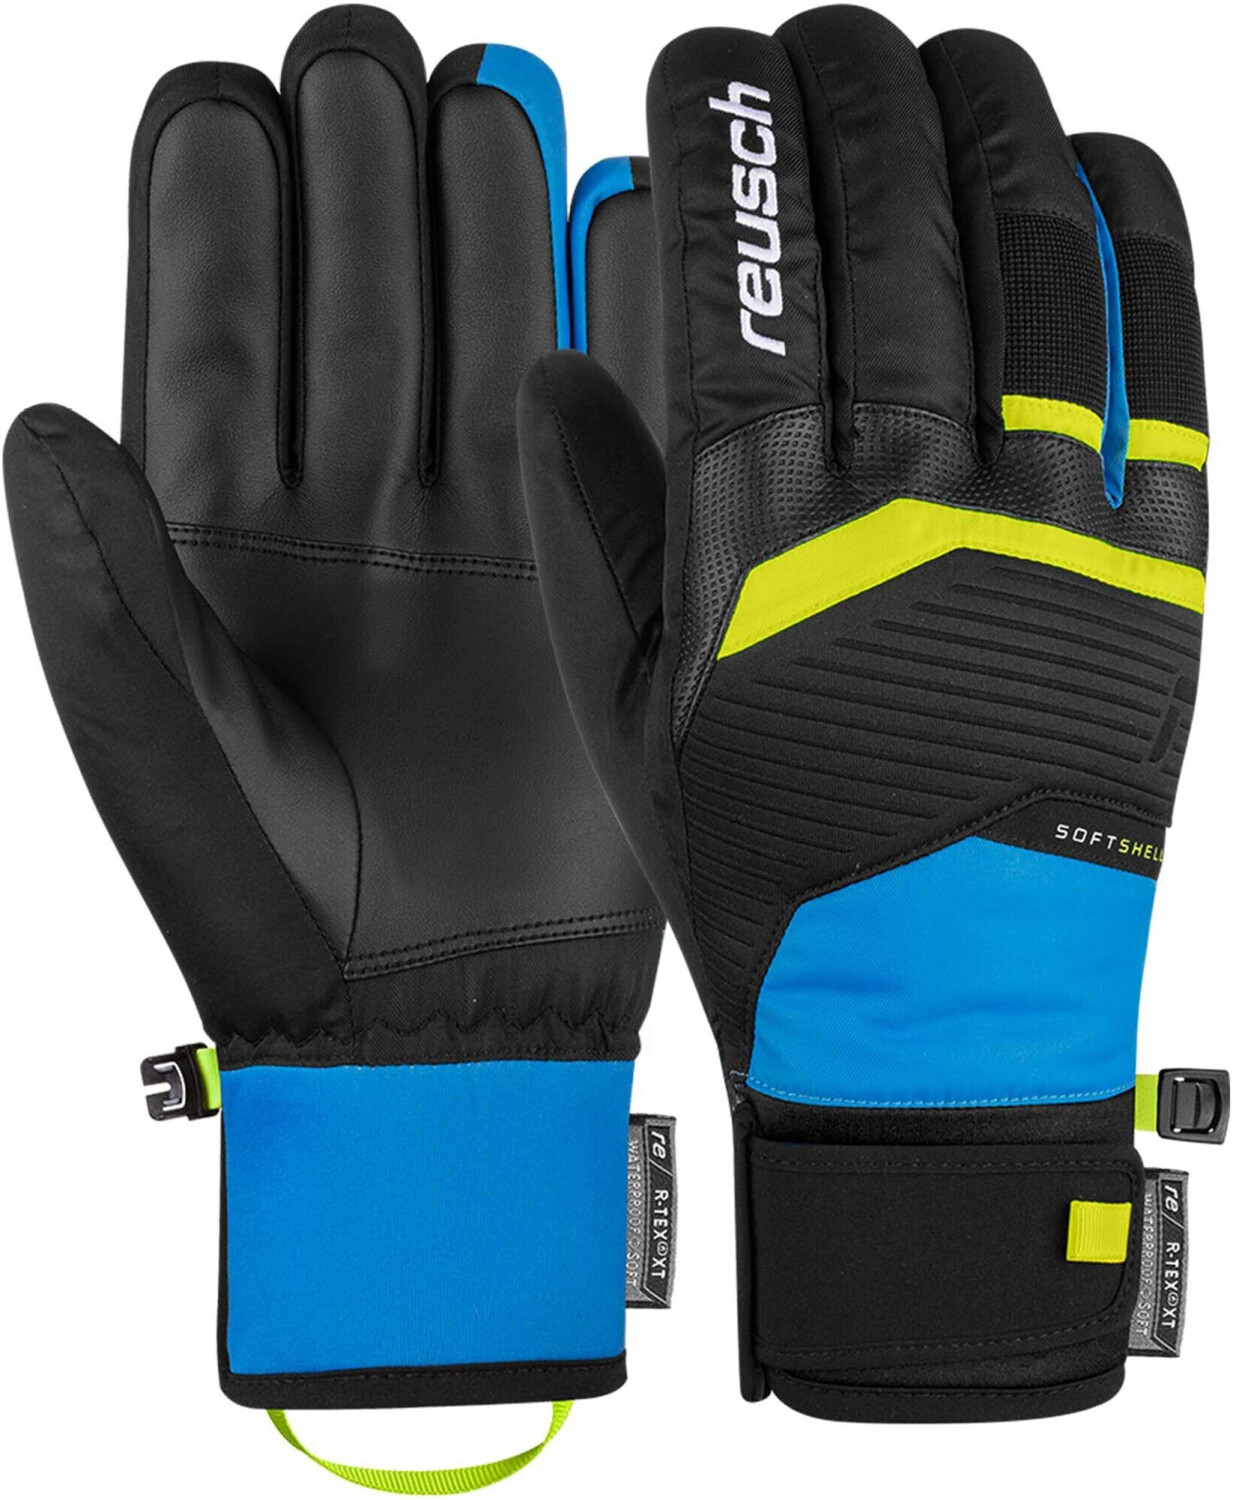 Reusch Venom R-TEX XT schwarz/blau/gelb € | bei Preisvergleich ab Handschuhe 44,95 (6101205)